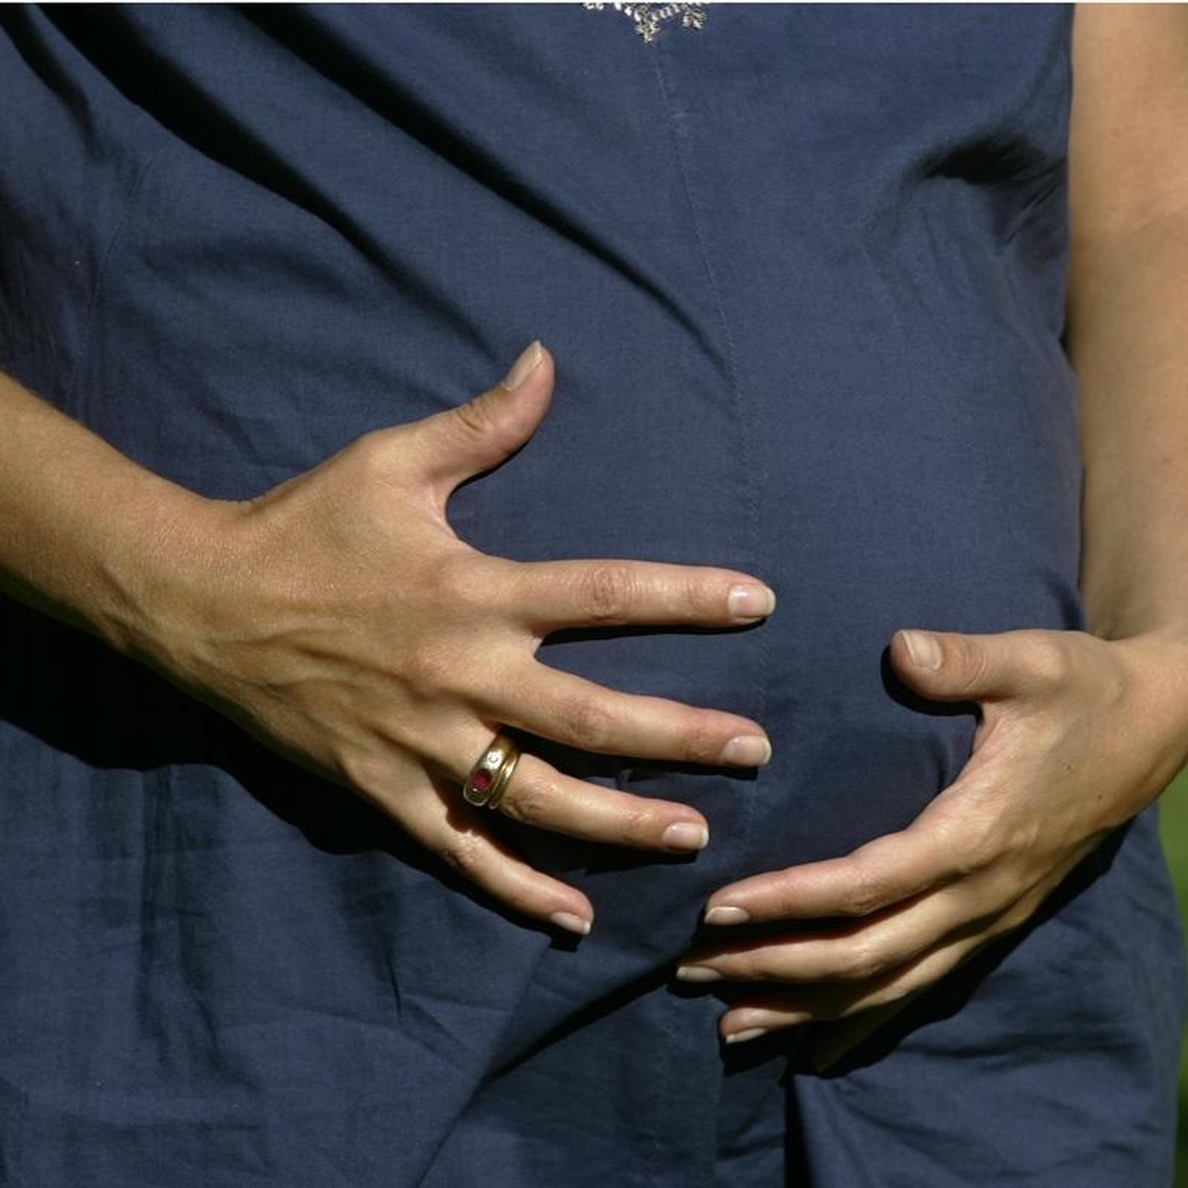 El parto humanizado satisface más a la mujer que el biomédico, según una tesis doctoral de la Universidad de Murcia